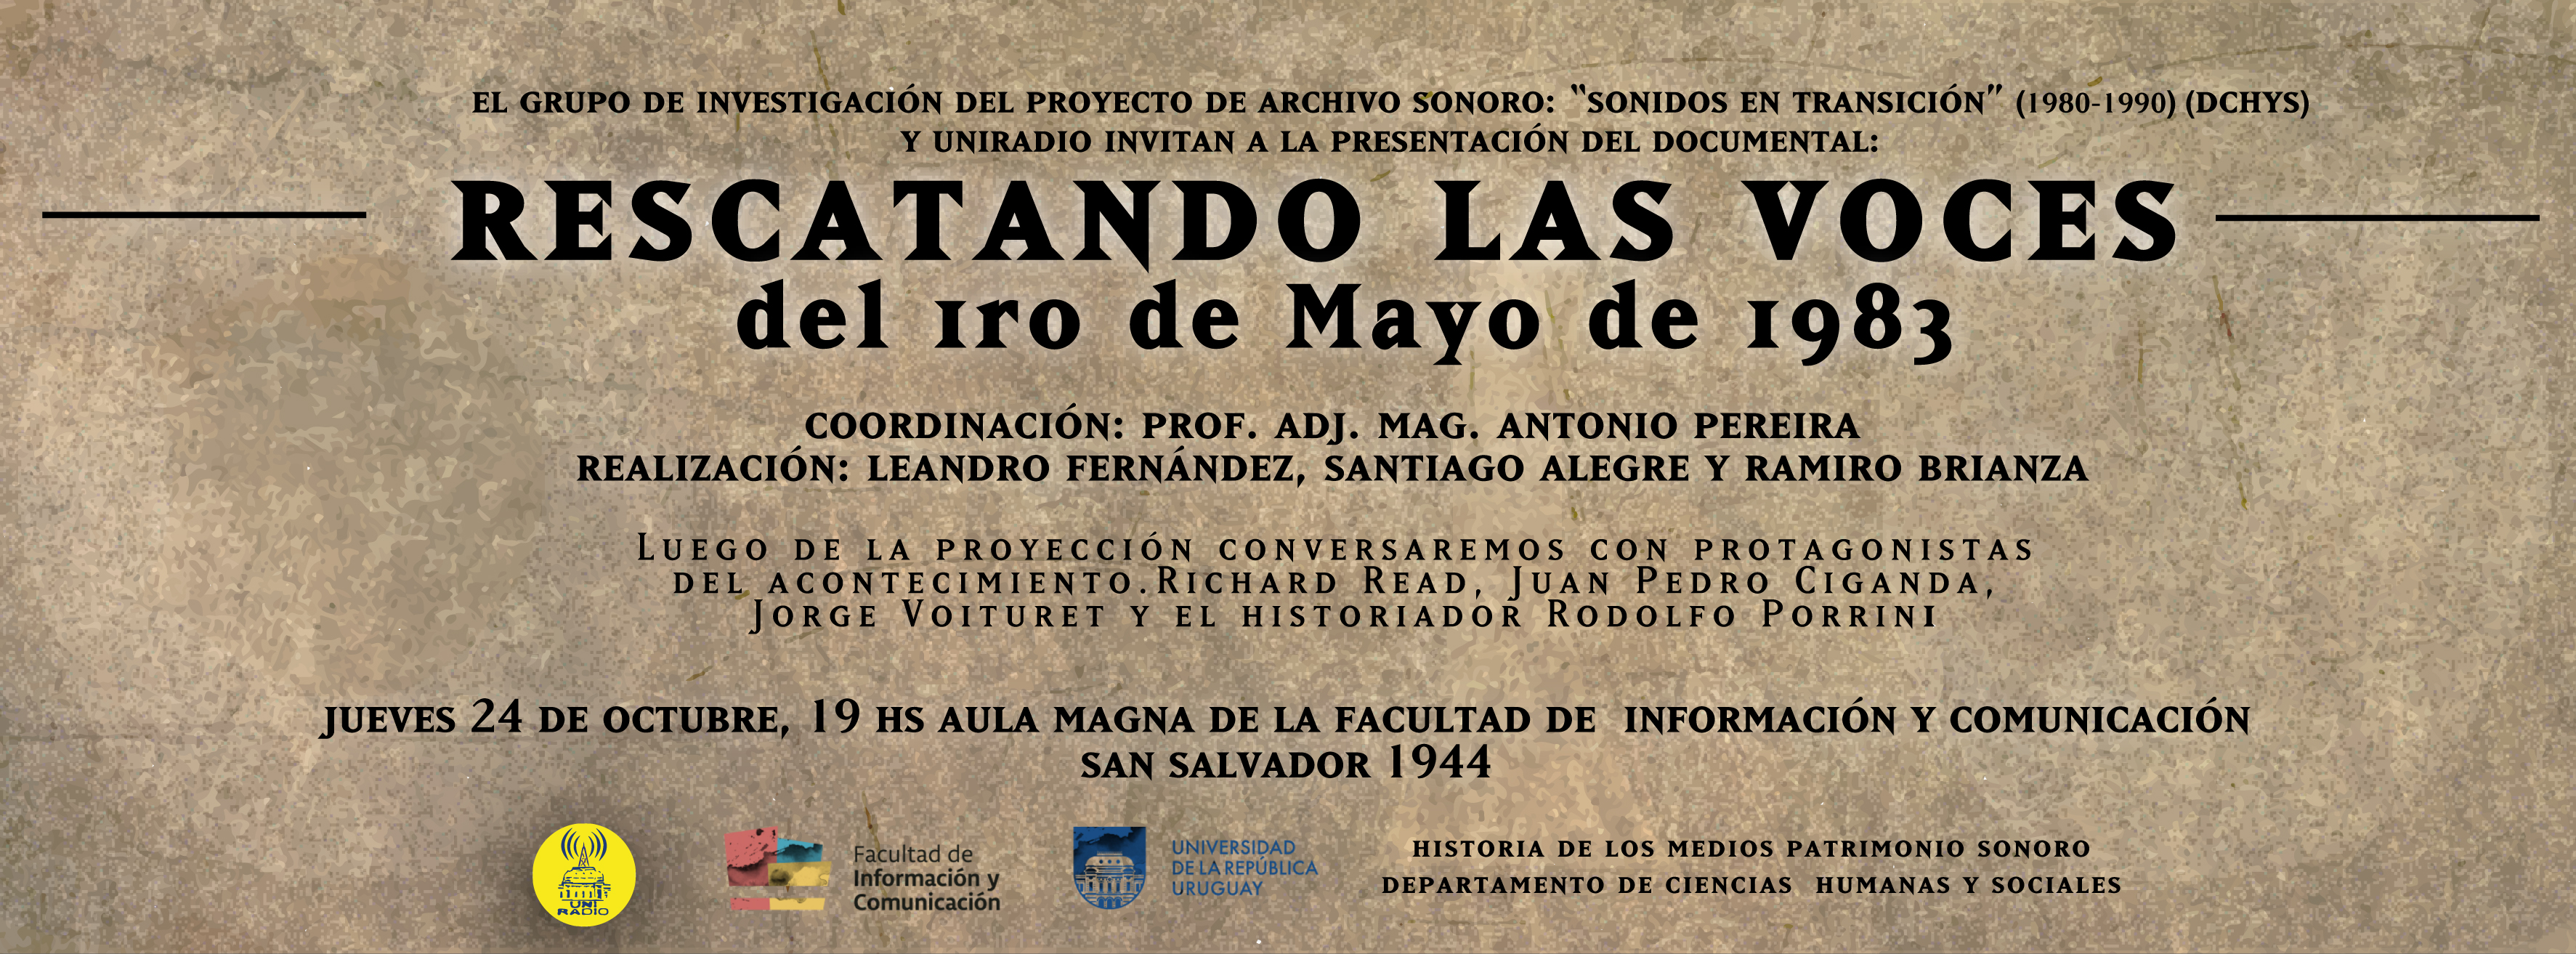 Afiche Invitación al evento "Rescatando las voces del 1 de mayo de 1983"